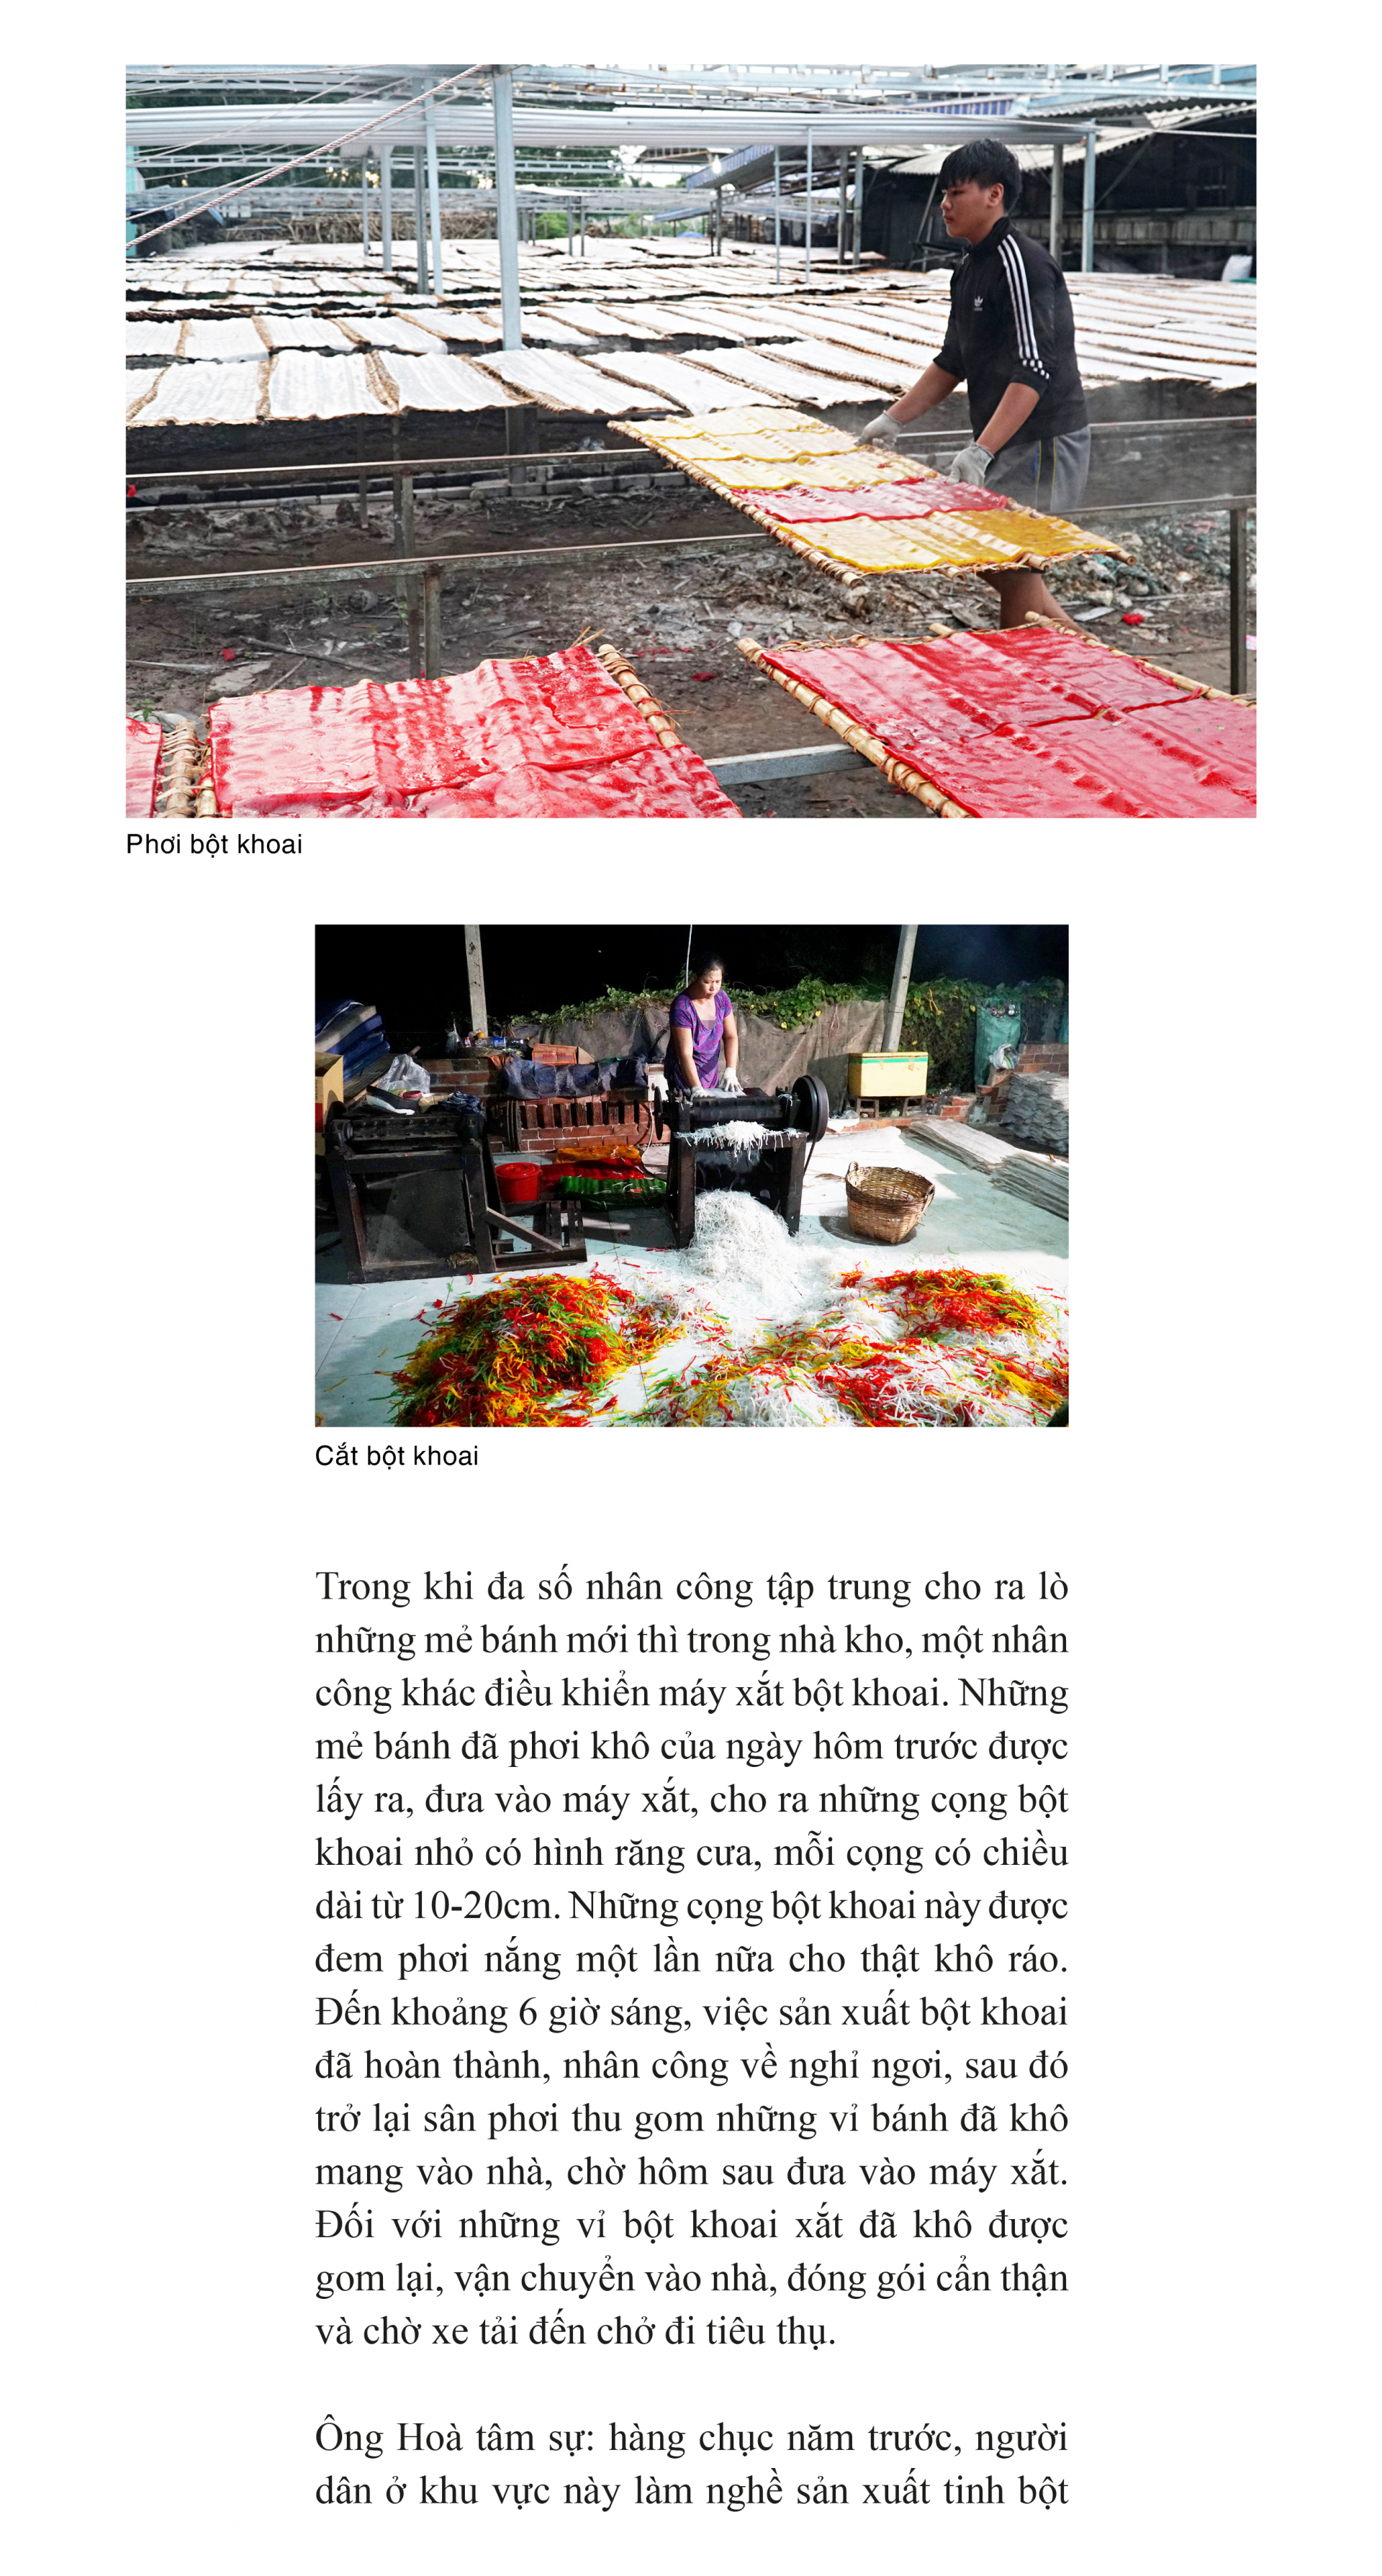 Làng bột khoai- Tiềm năng du lịch ở Tây Ninh